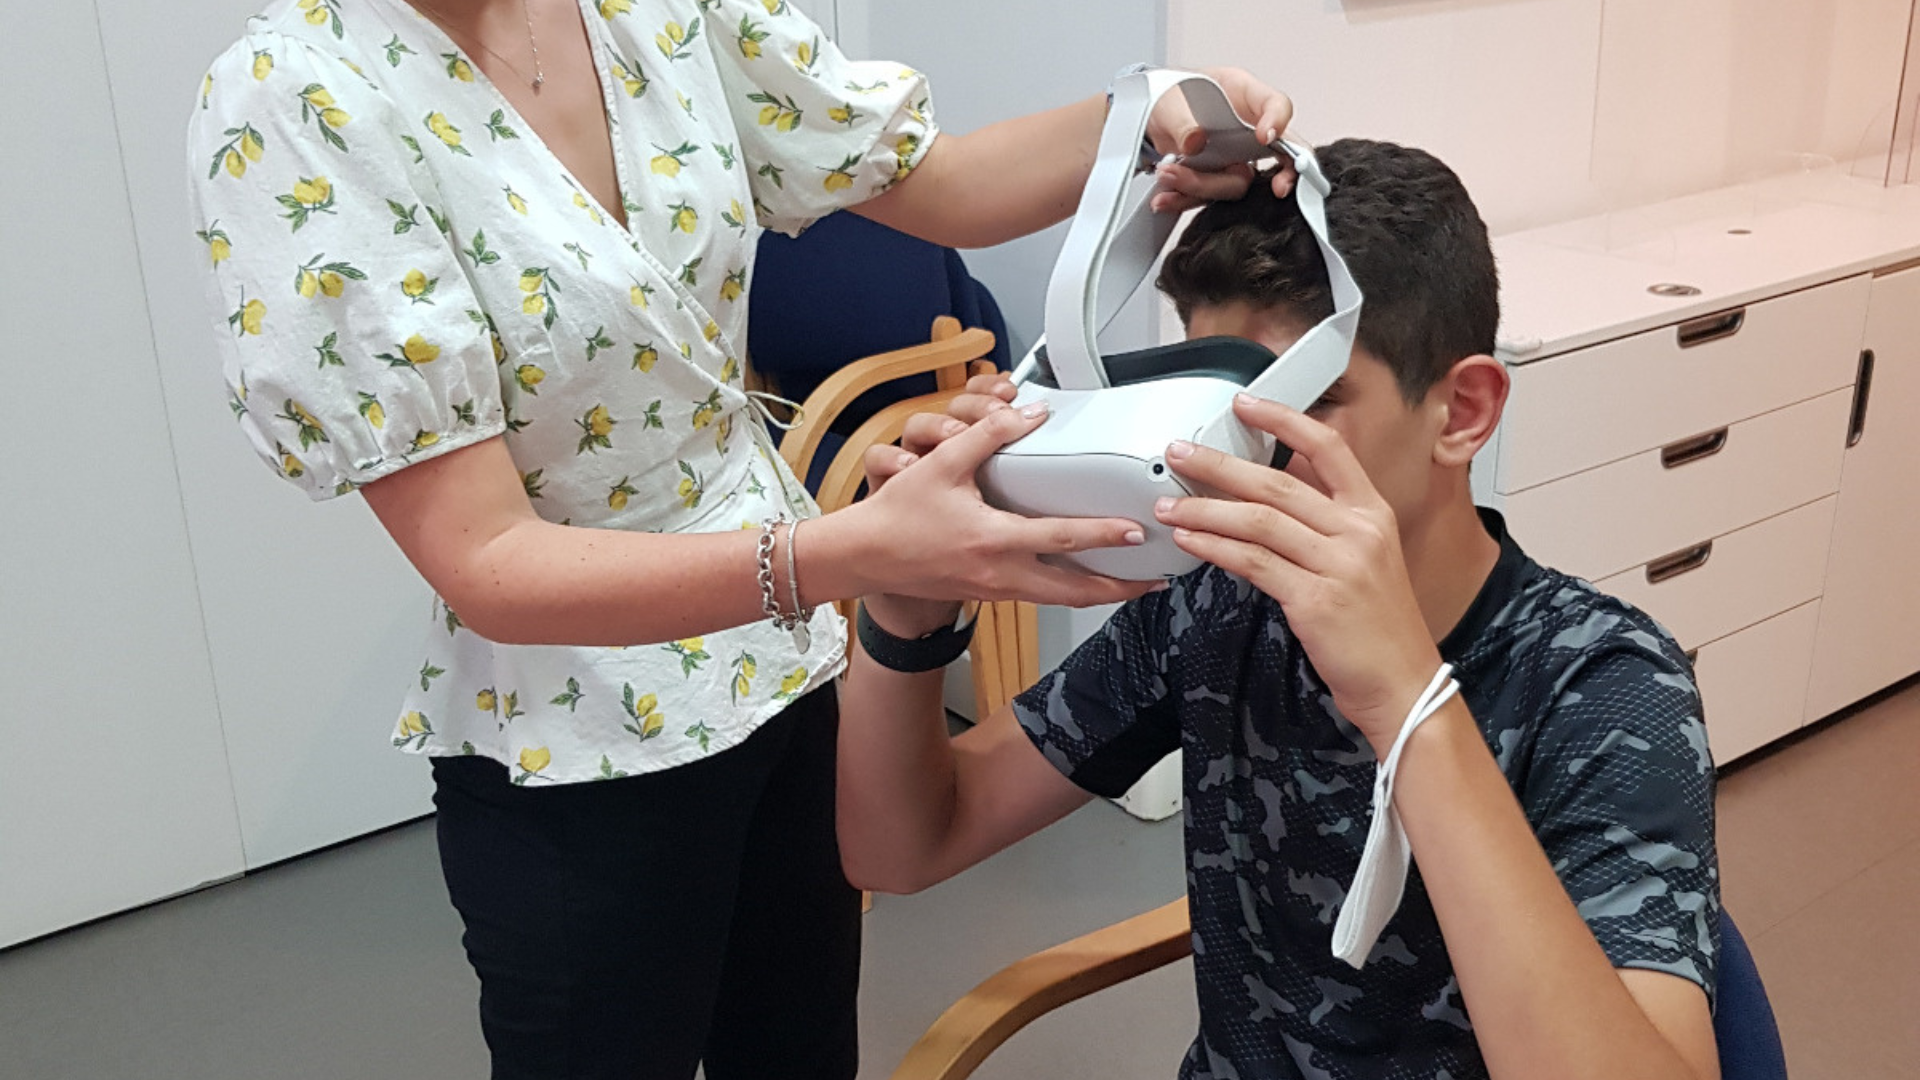 VR&BIOSENSORS per il trattamento della balbuzie | VR&BIOSENSORS for stuttering treatment